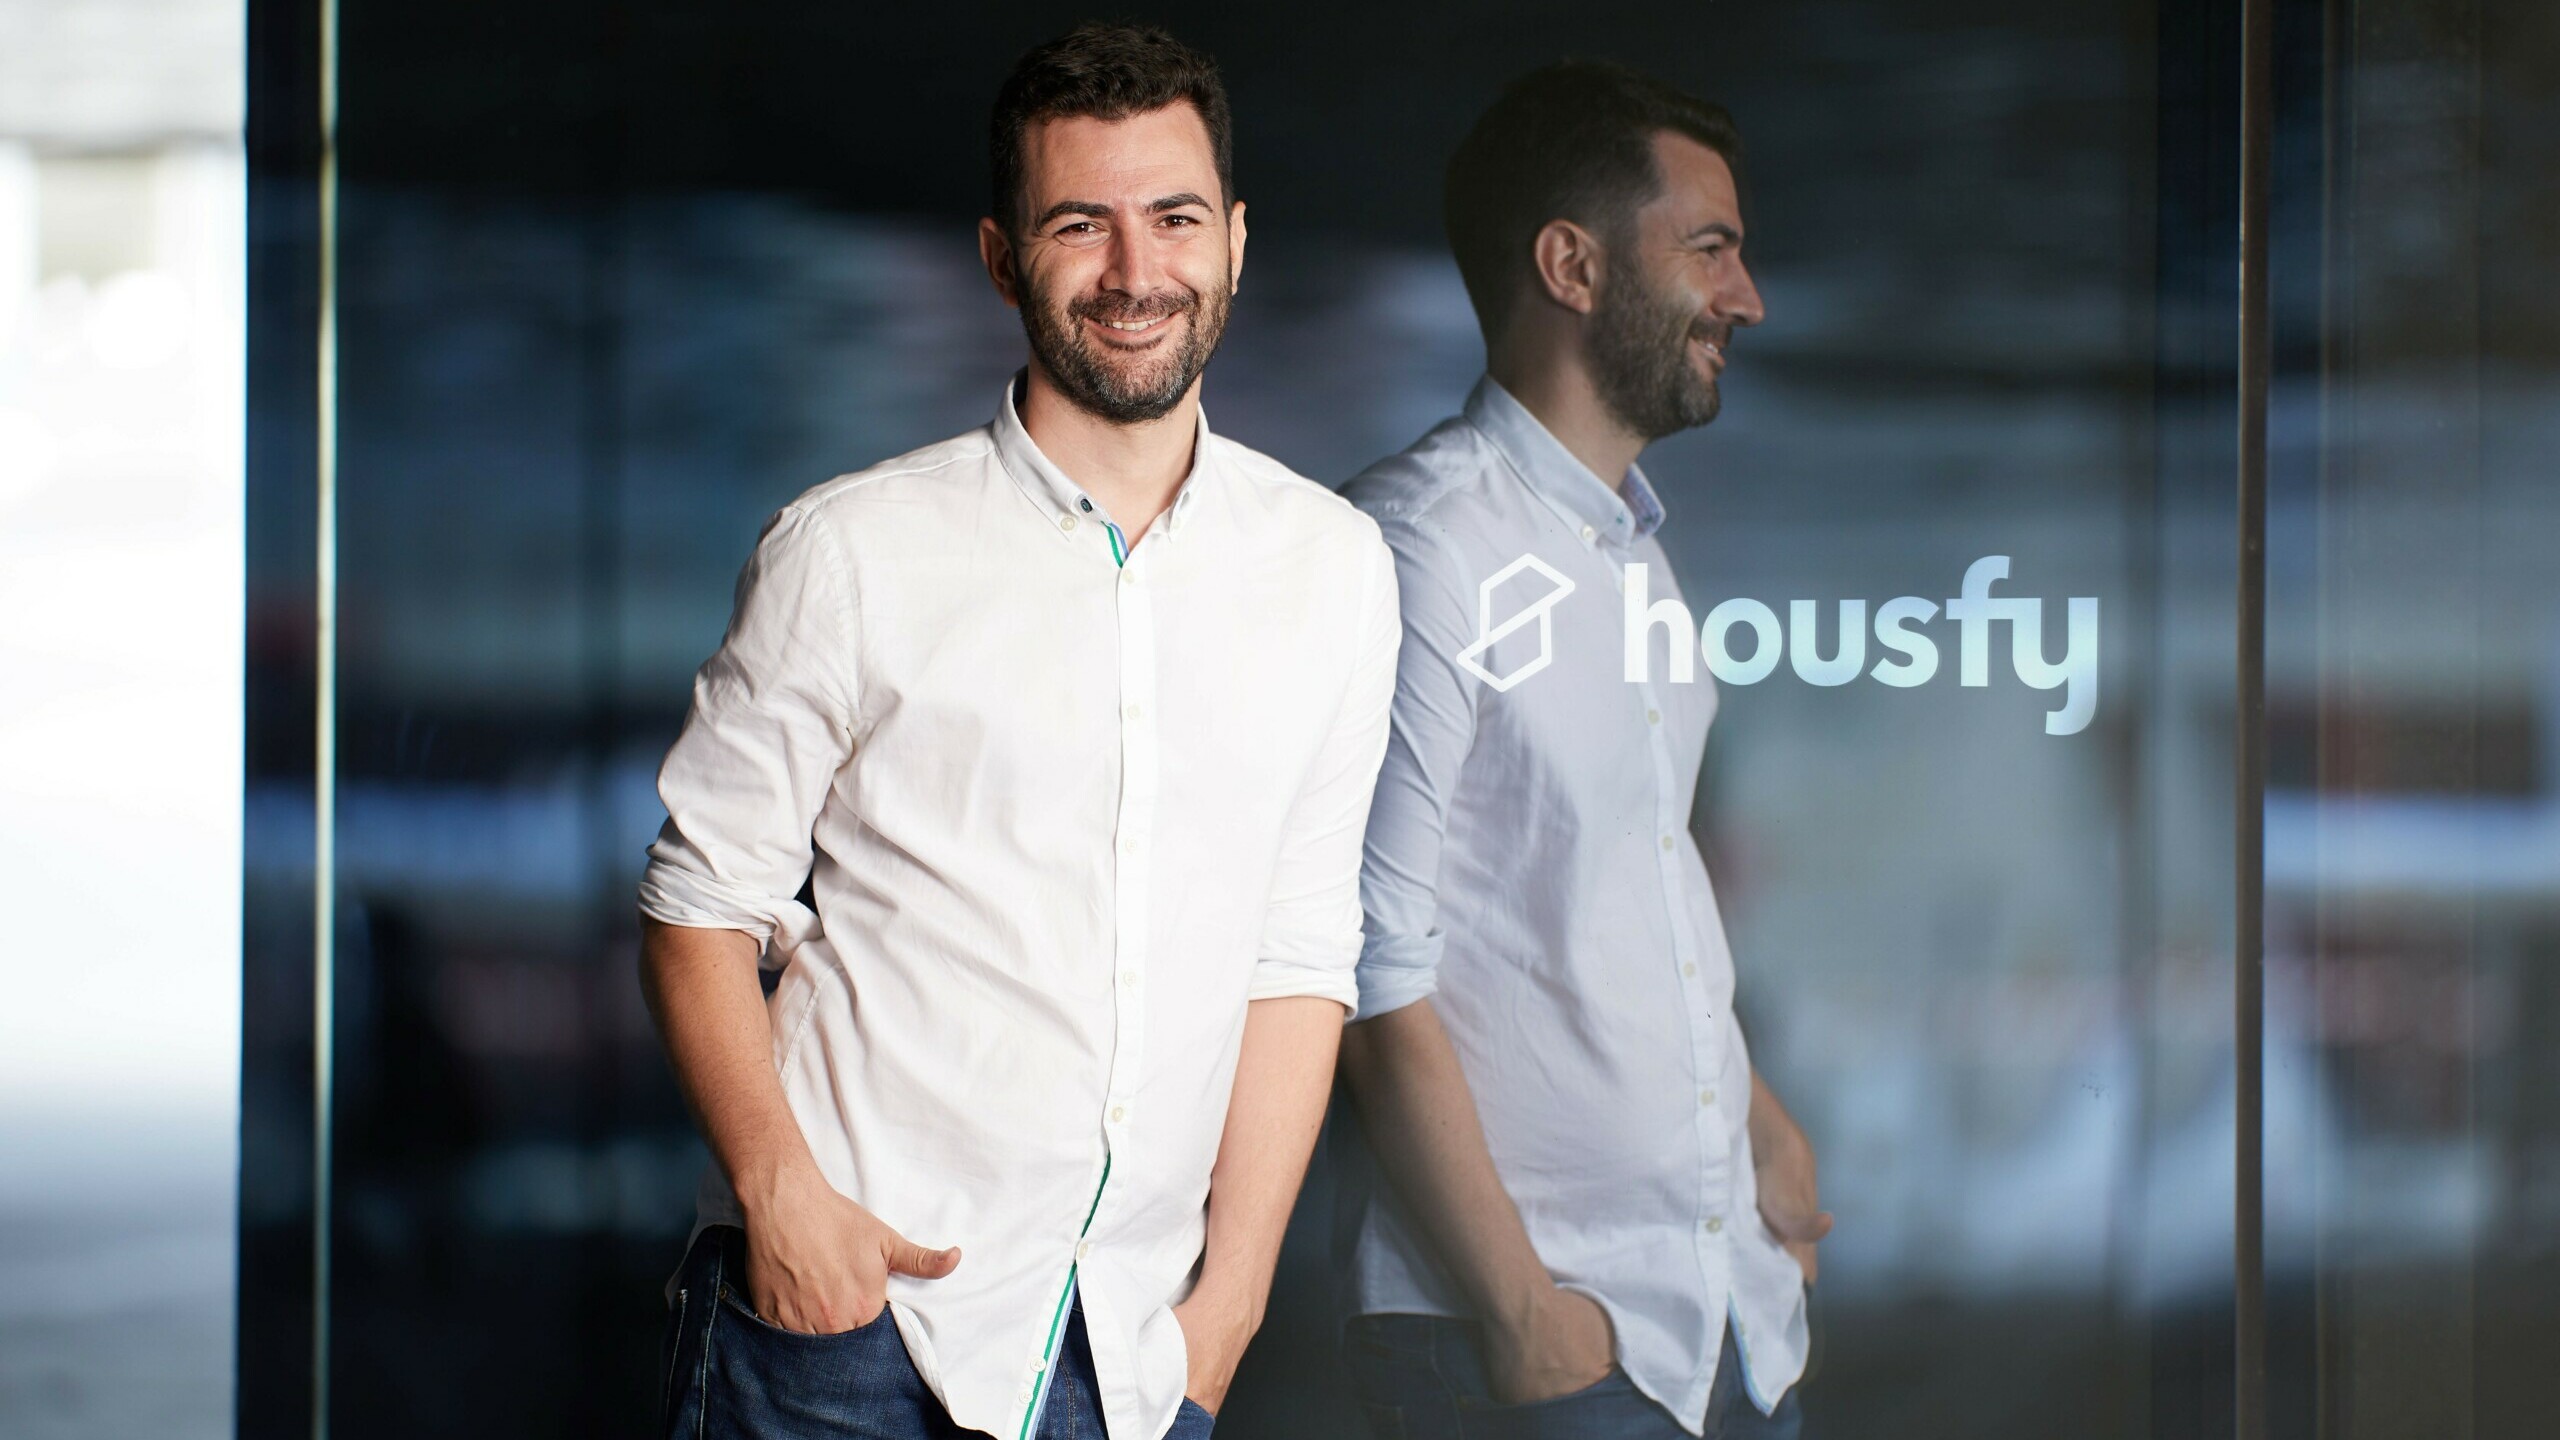 Housfy cierra una ronda de financiación de 10 millones y pone el foco en Portugal